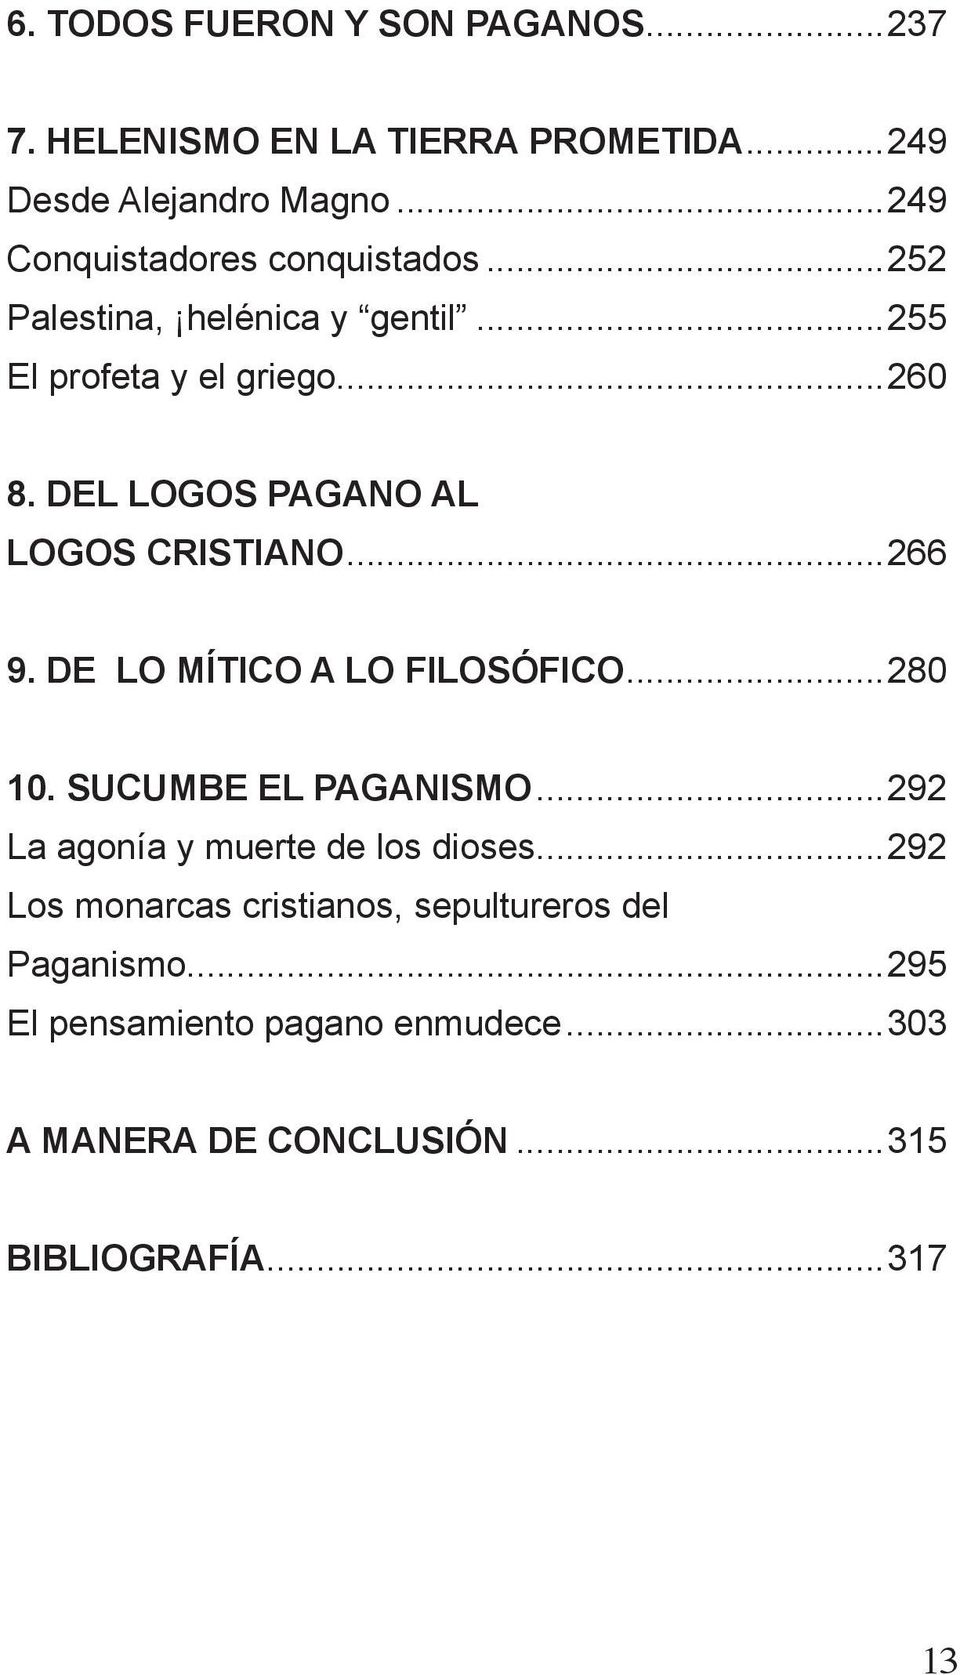 DEL LOGOS PAGANO AL LOGOS CRISTIANO...266 9. DE LO MÍTICO A LO FILOSÓFICO...280 10. SUCUMBE EL PAGANISMO.